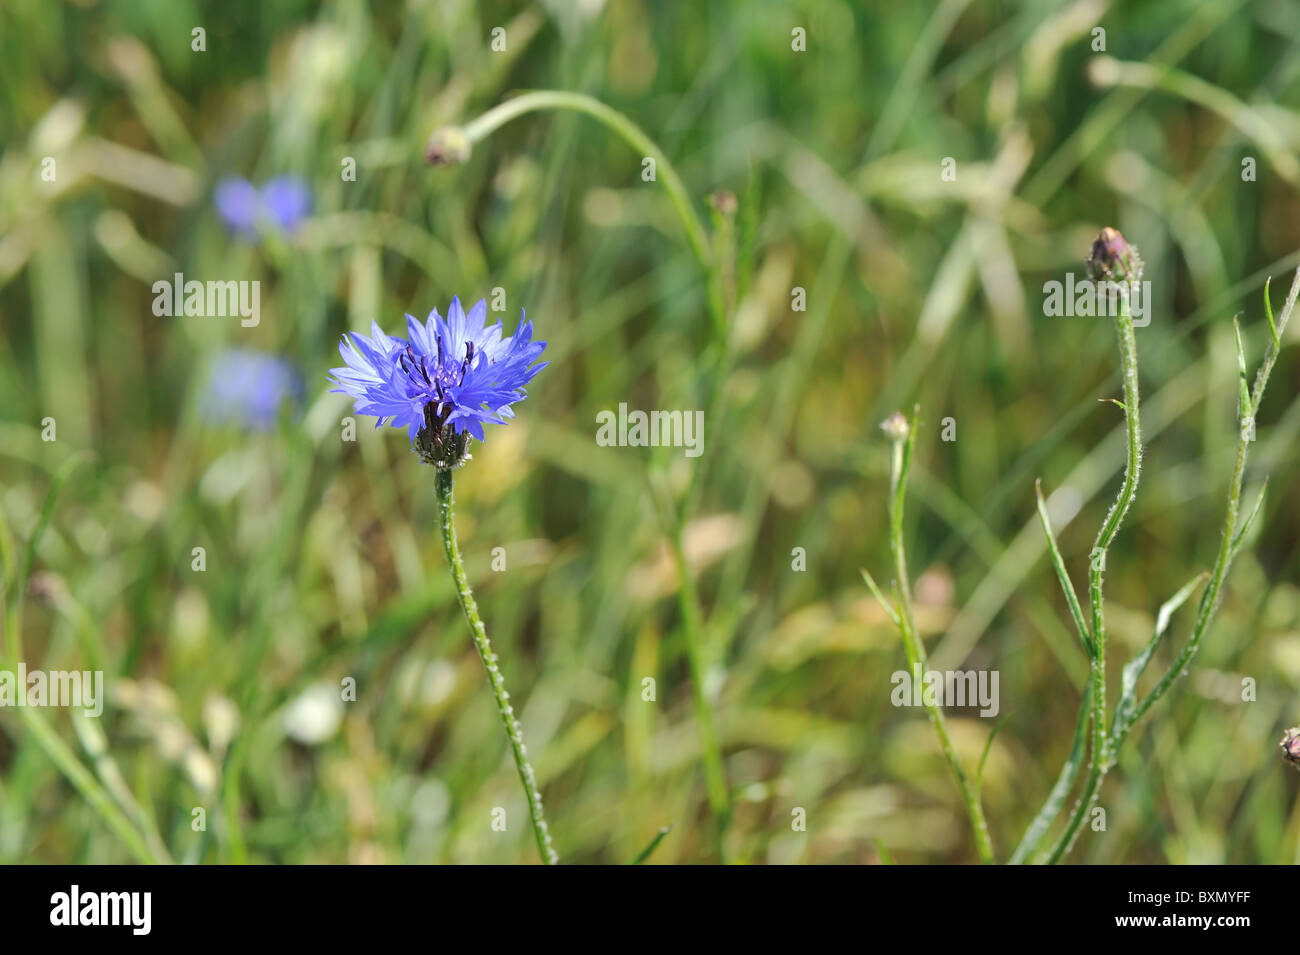 - Hurtsickle - Bleue bleuet (Centaurea cyanus) floraison dans un champ - Cévennes - France Banque D'Images